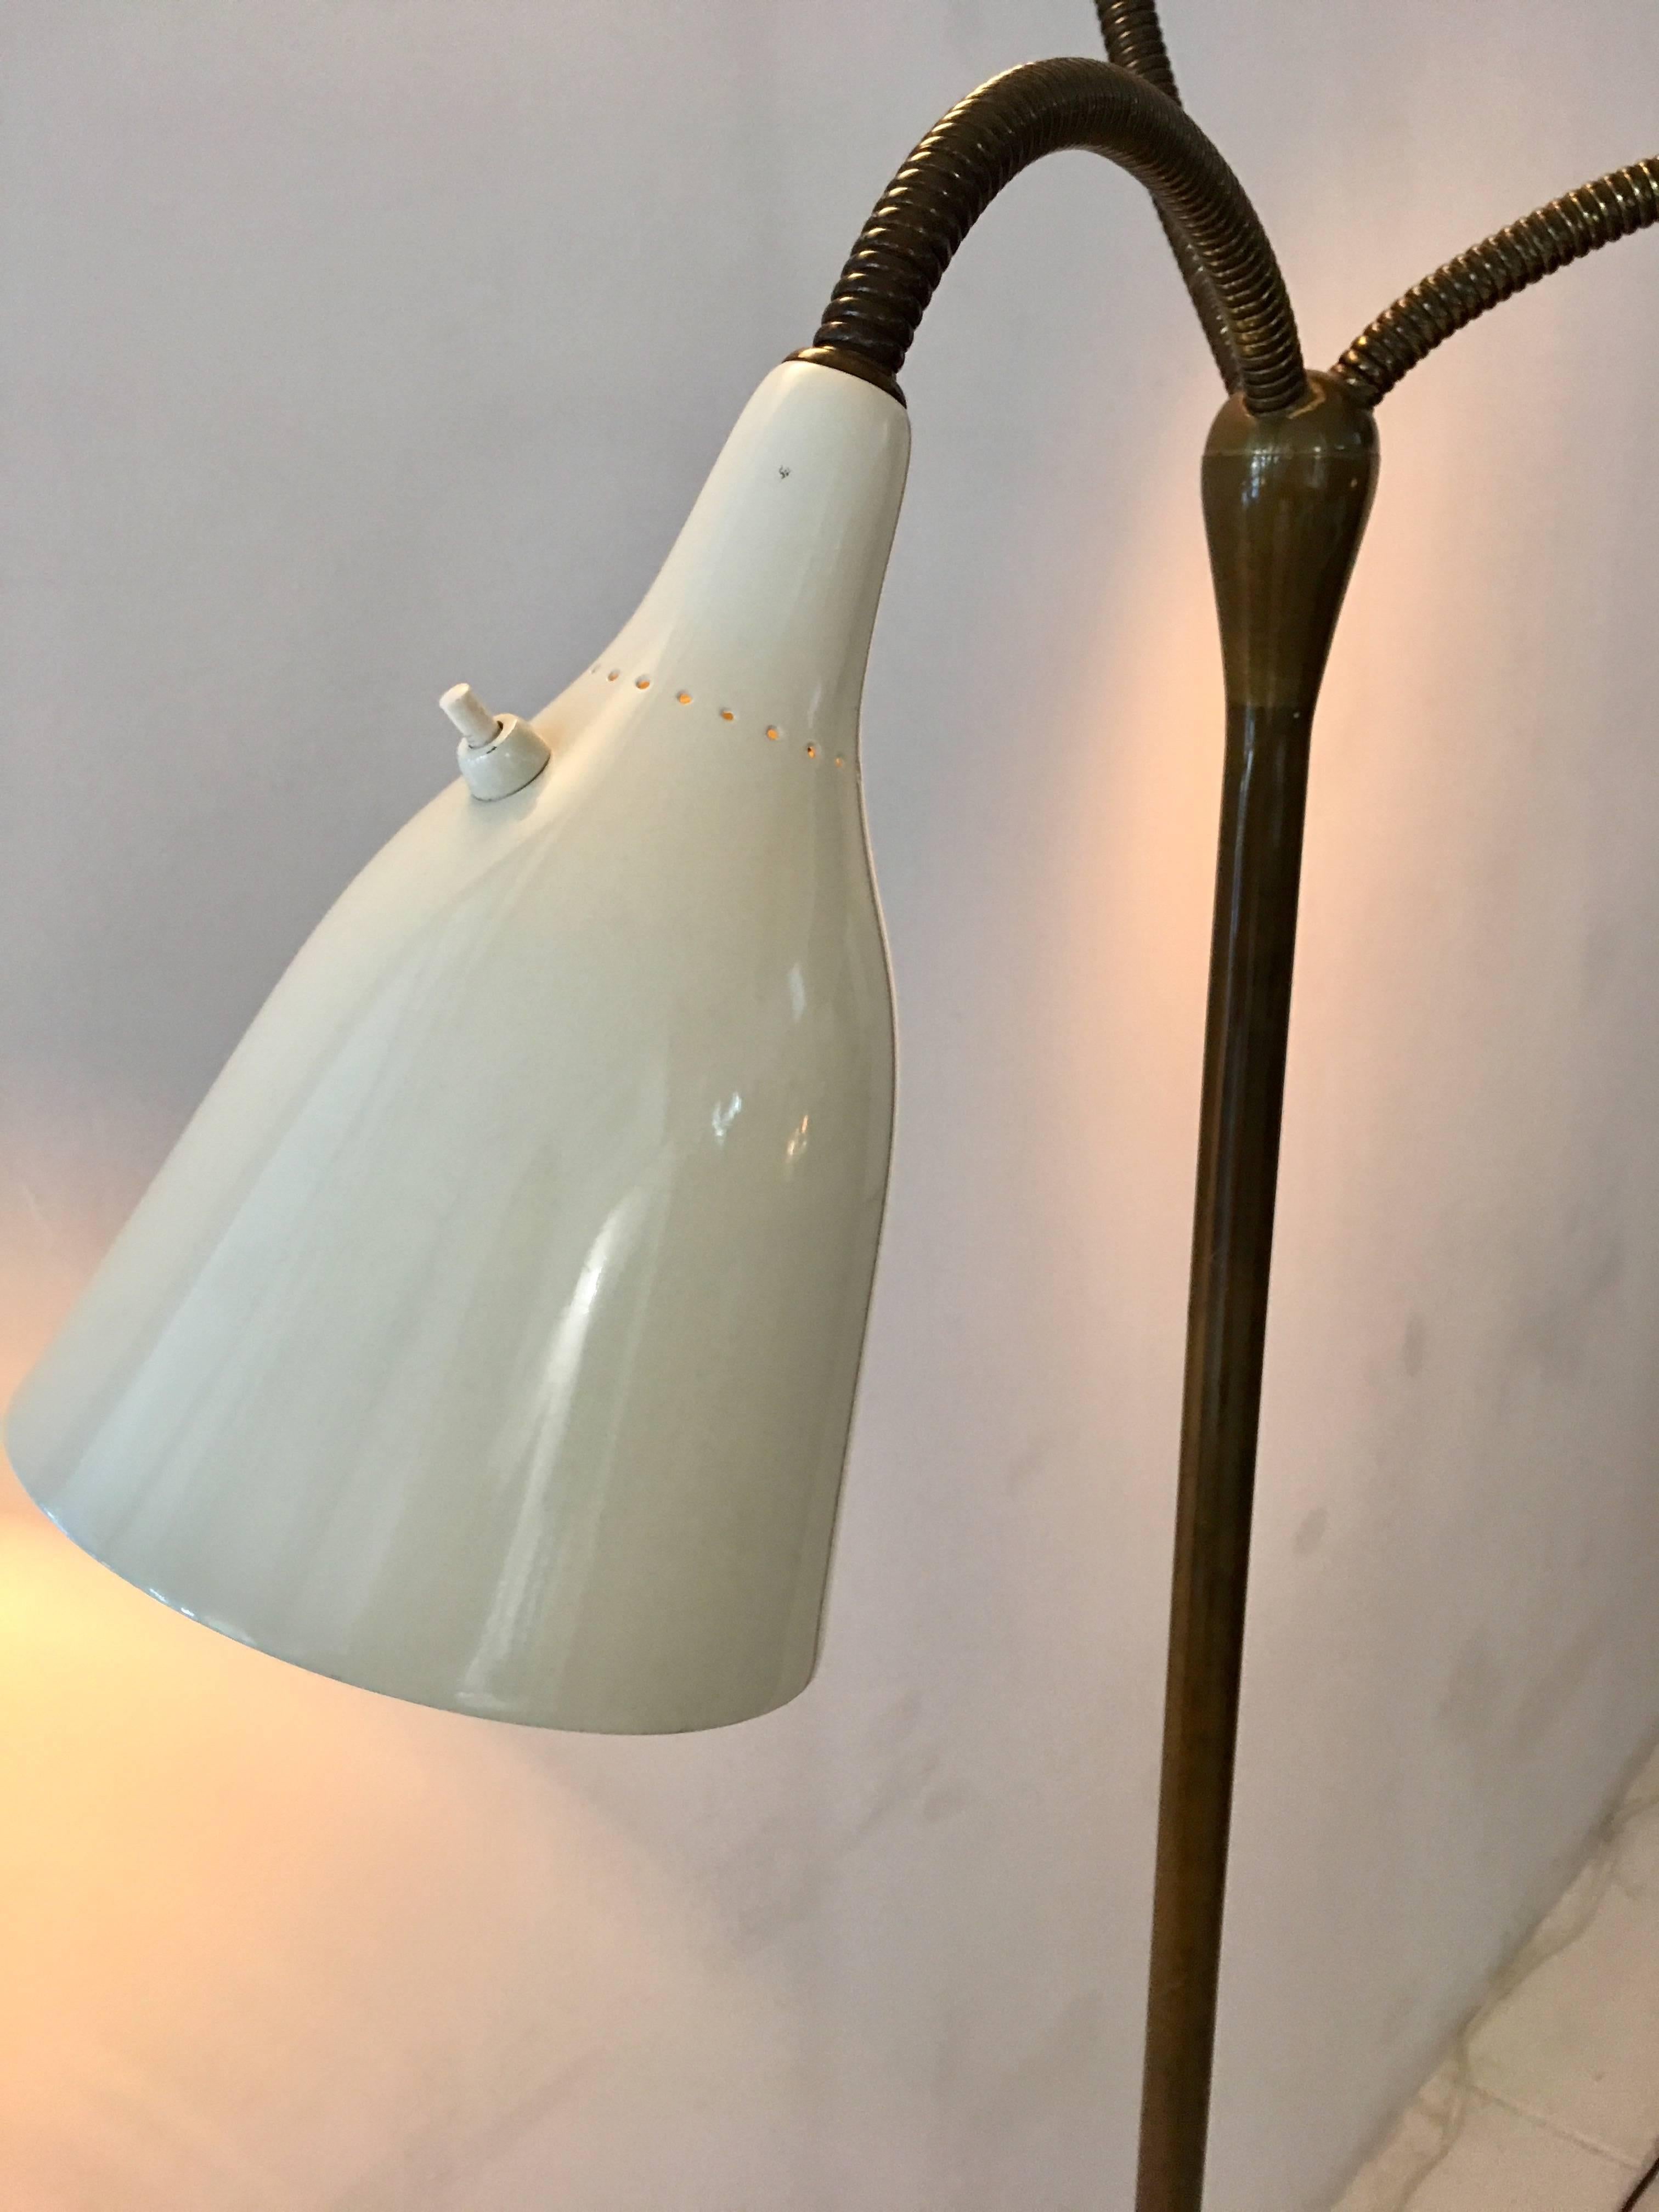 Stilnovo Floor Lamp 3